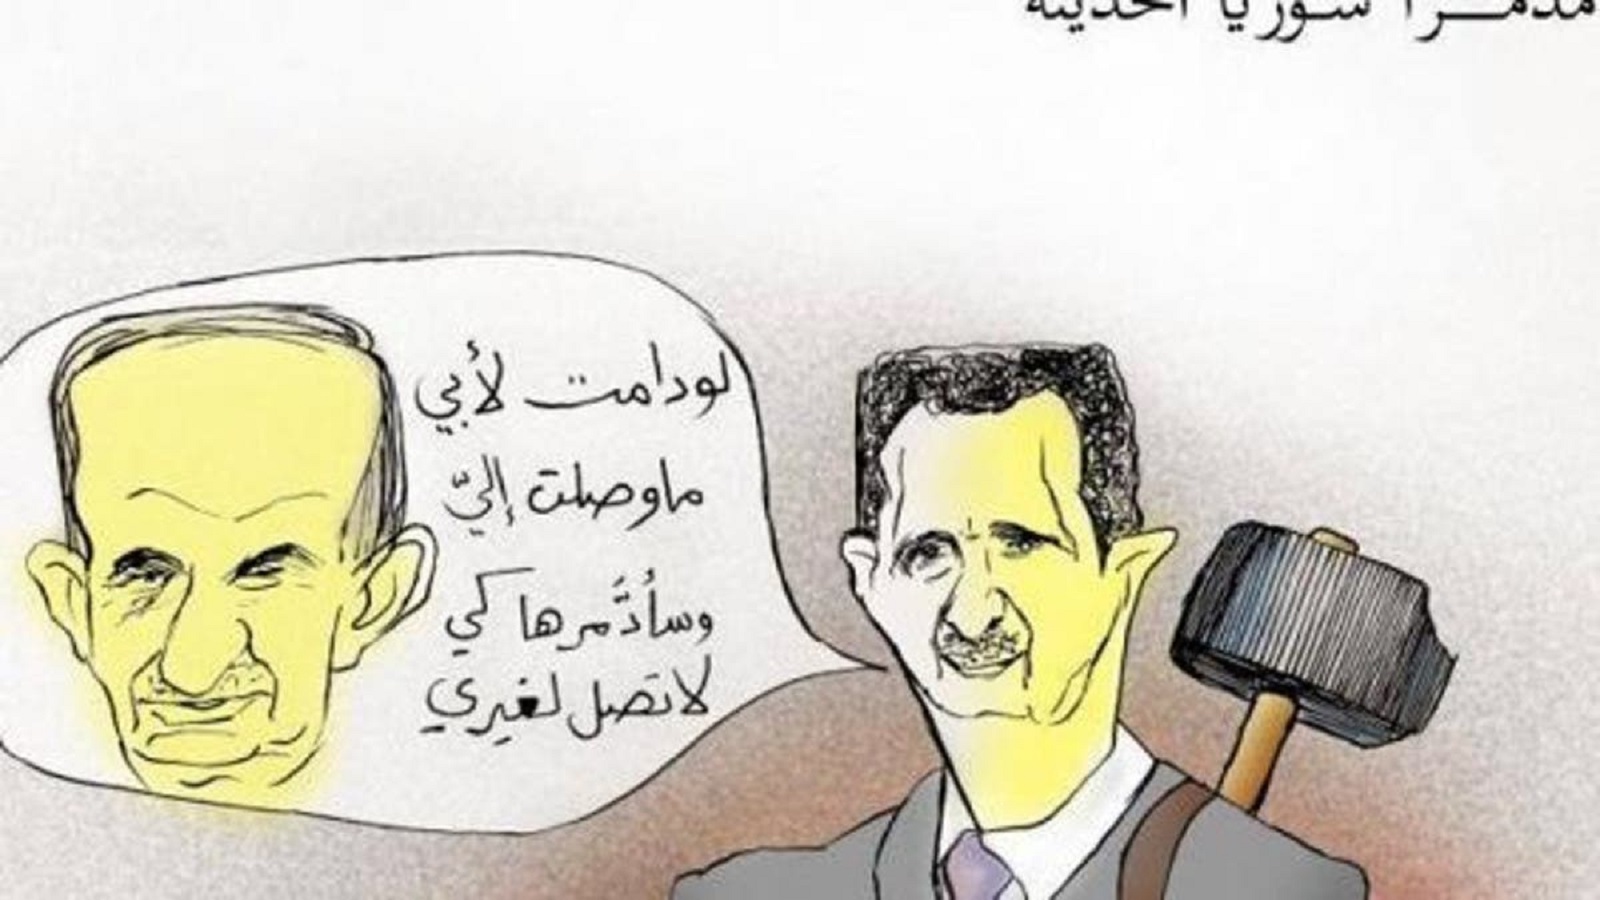 أسوأ ما في السيرك الانتخابي السوري